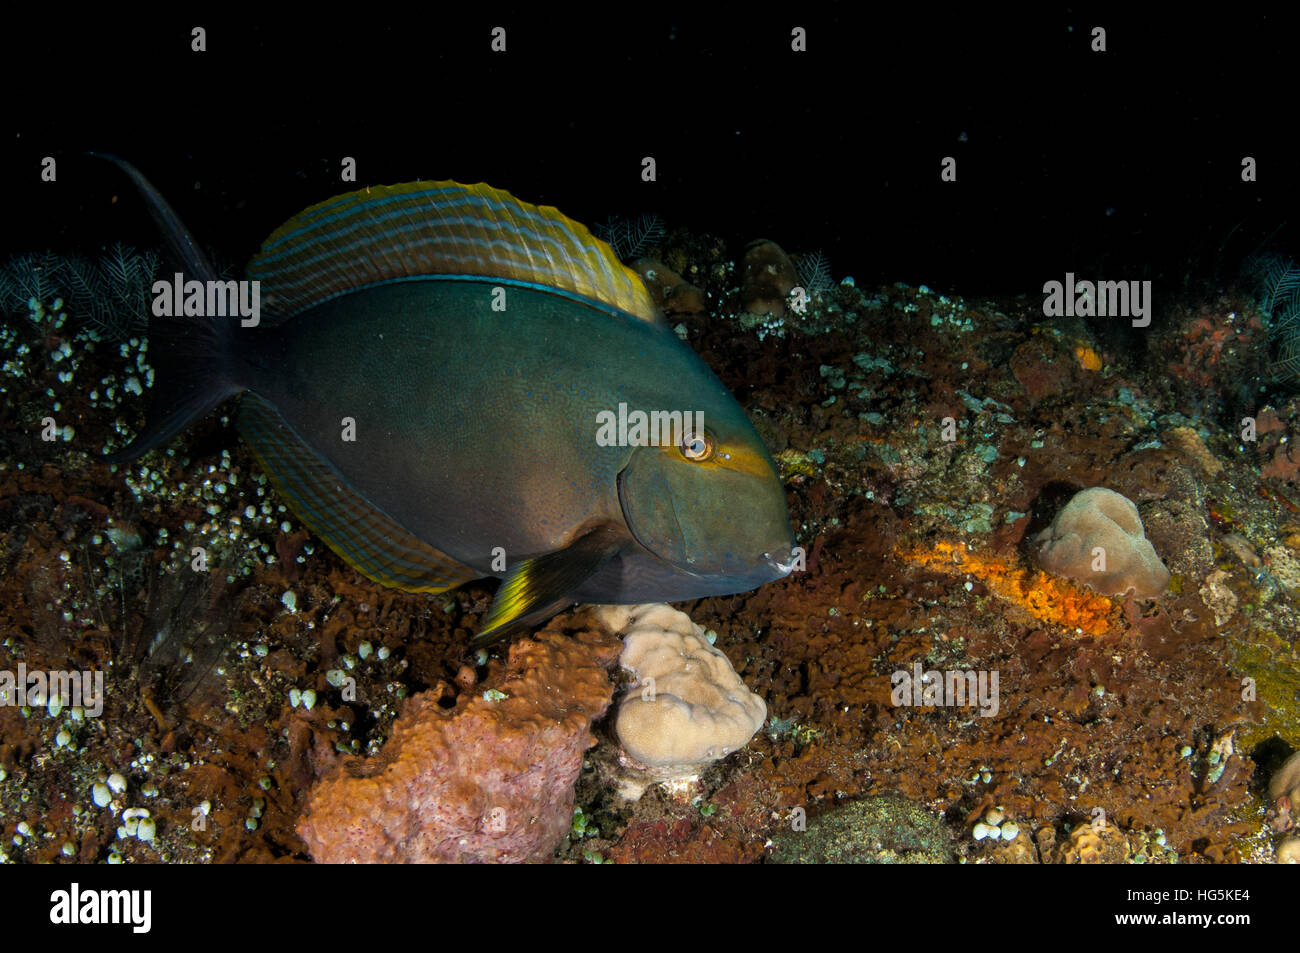 Eyestripe surgeonfish (Acanthurus dussumieri) in Bali, Indonesia Stock Photo